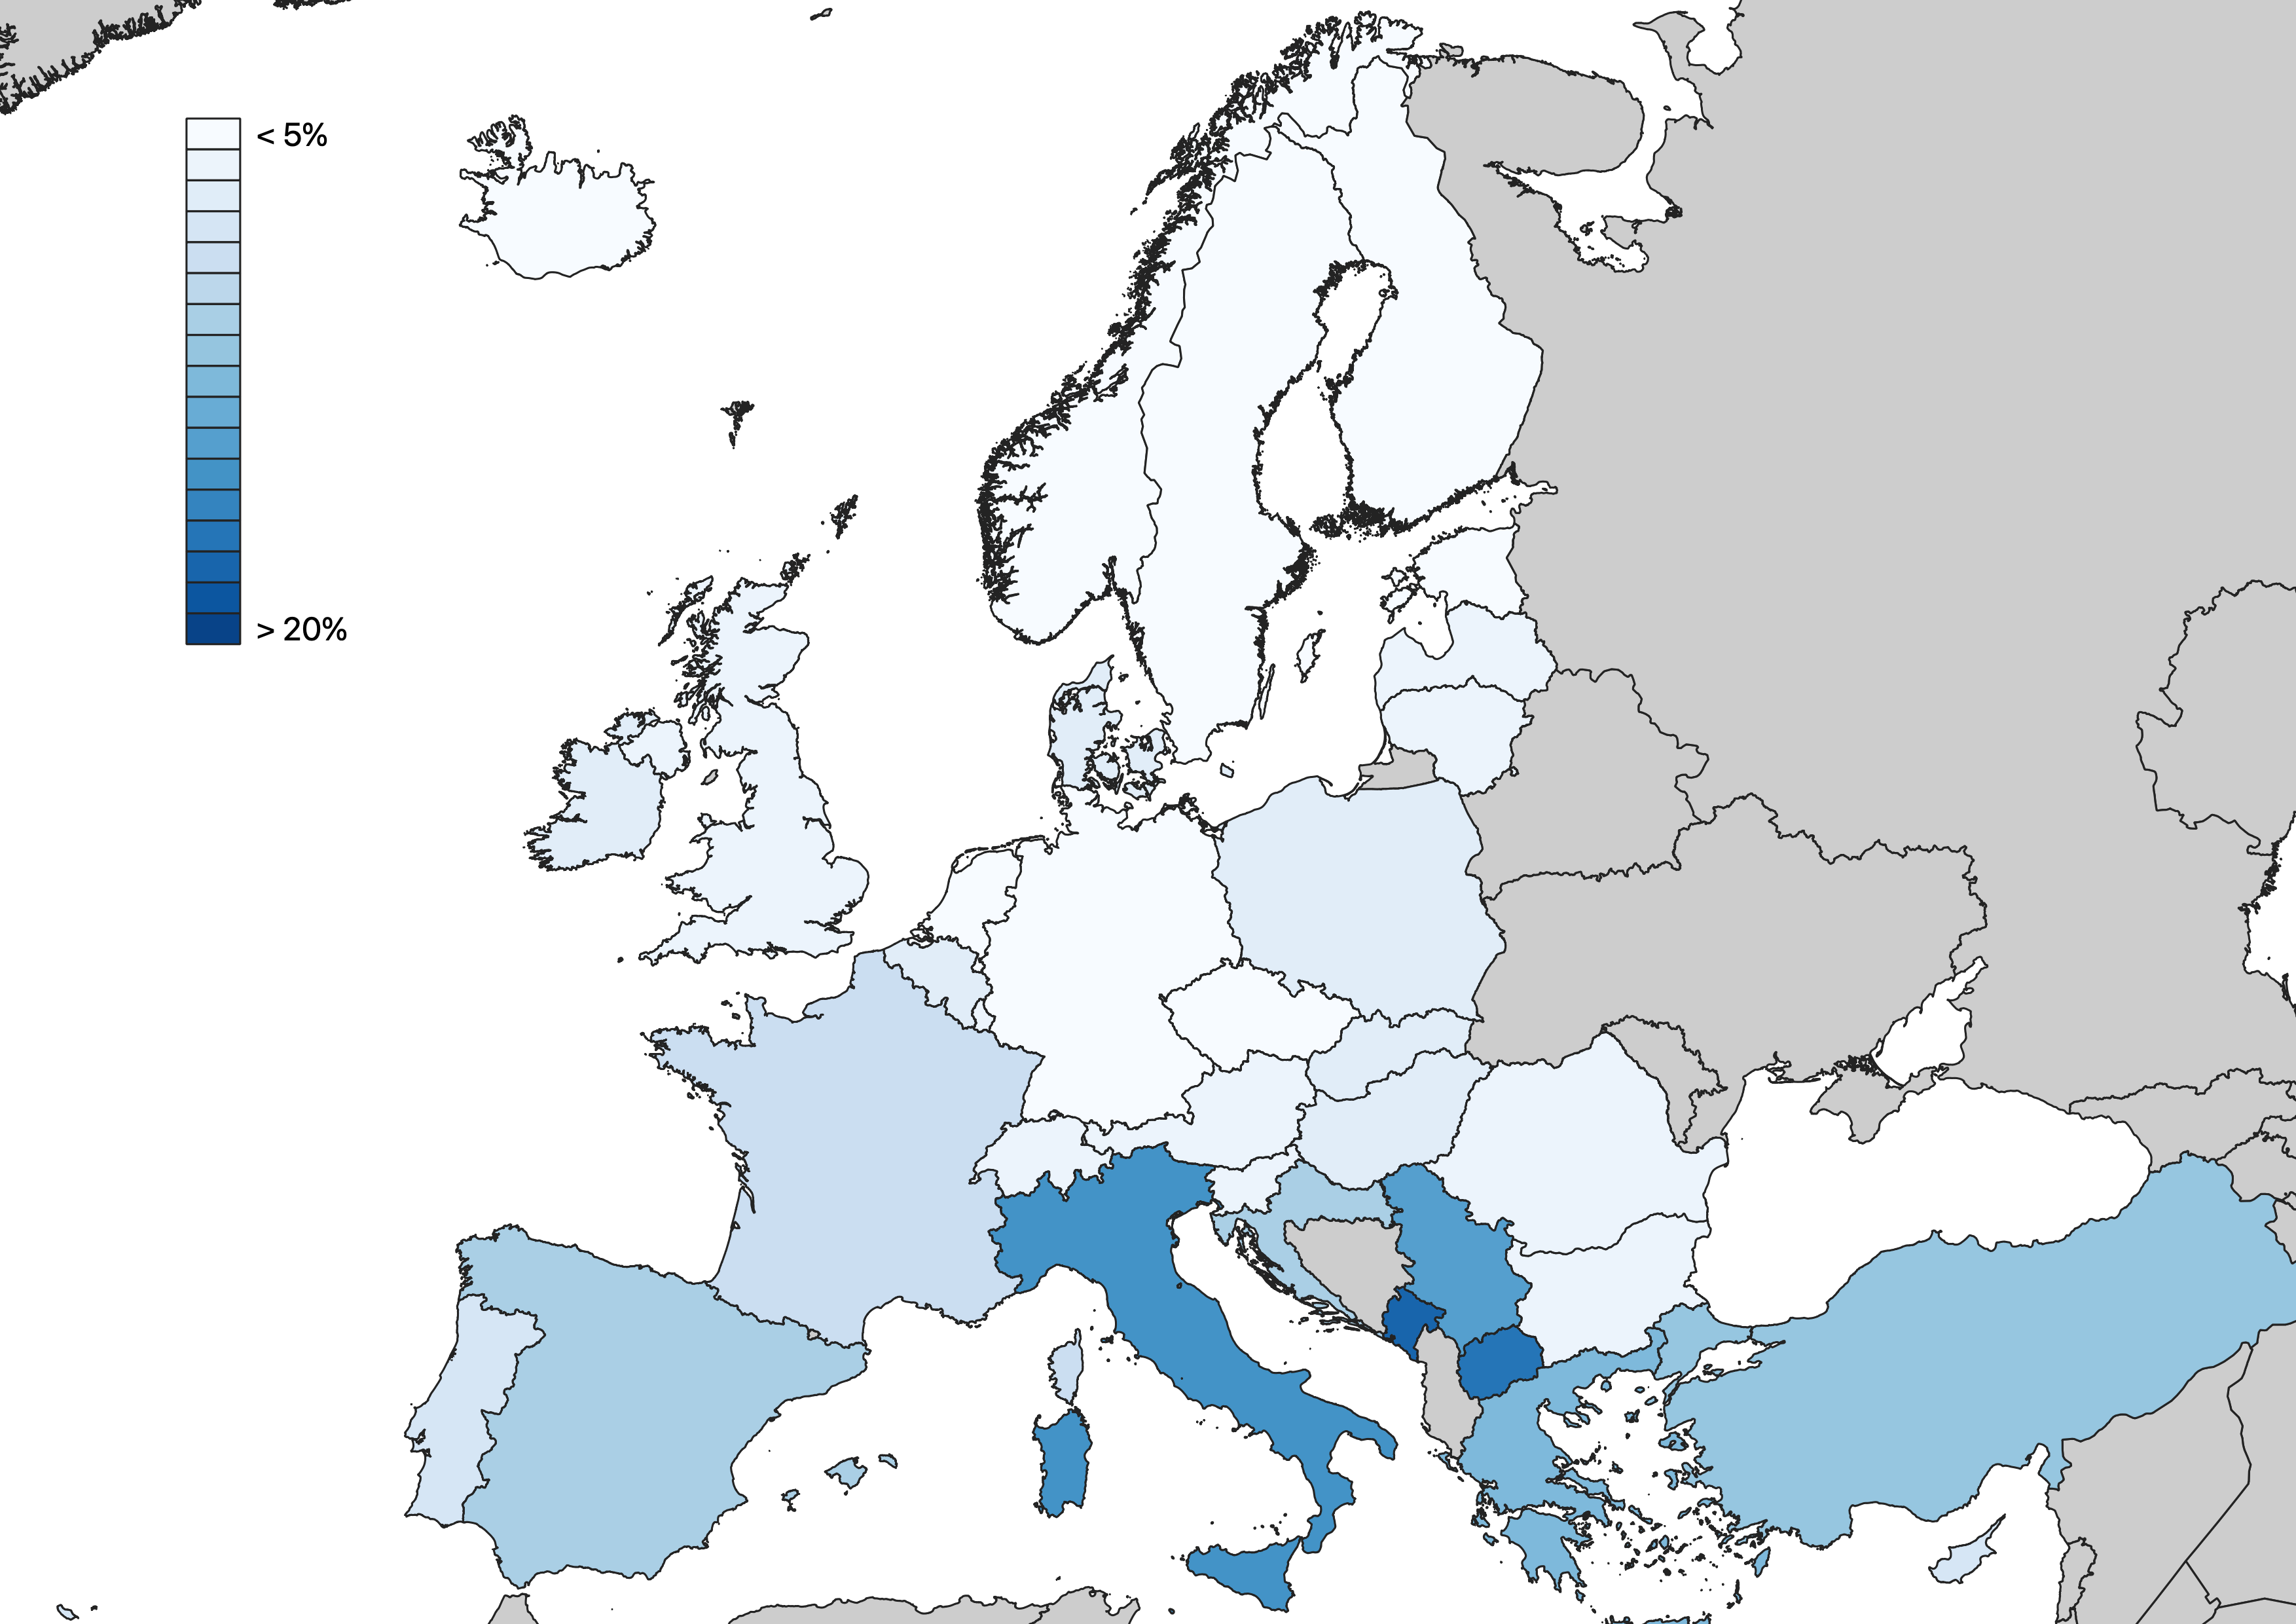 La mappa/4. La percentuale di non studenti e debolmente attivi 15-29 anni in Europa